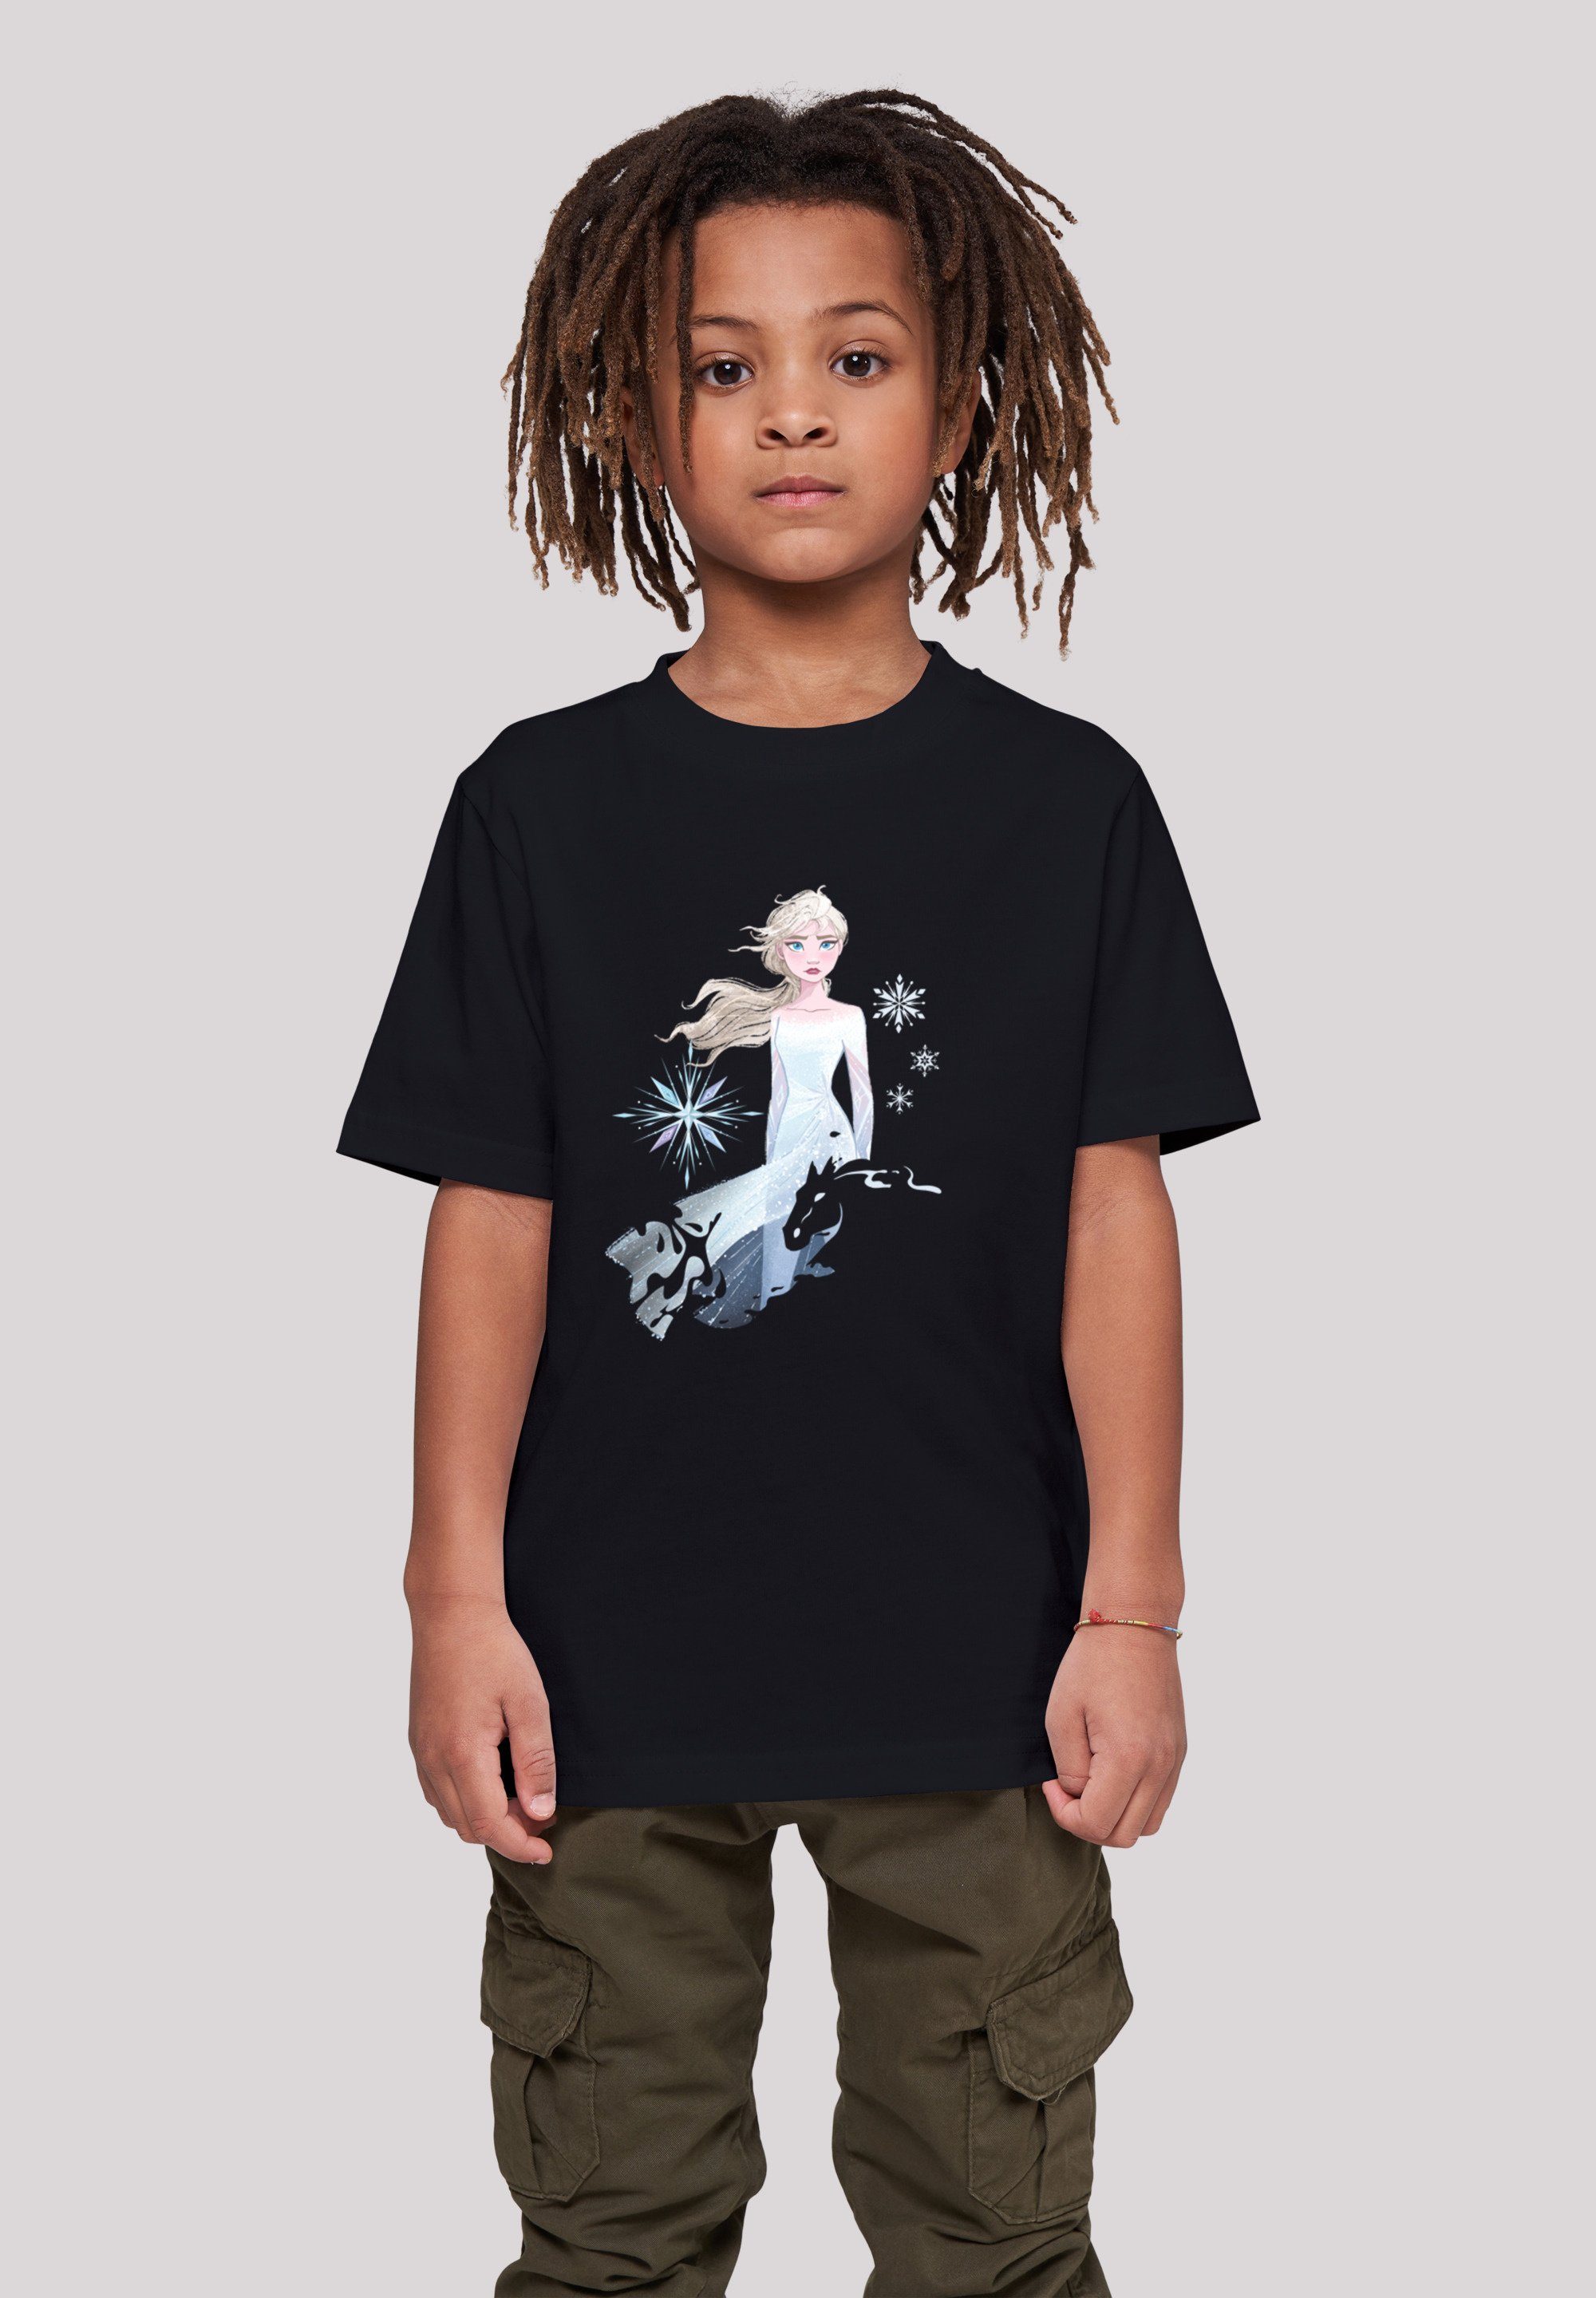 F4NT4STIC T-Shirt Disney Frozen 2 Elsa Nokk Wassergeist Pferd Silhouette Unisex Kinder,Premium Merch,Jungen,Mädchen,Bedruckt schwarz